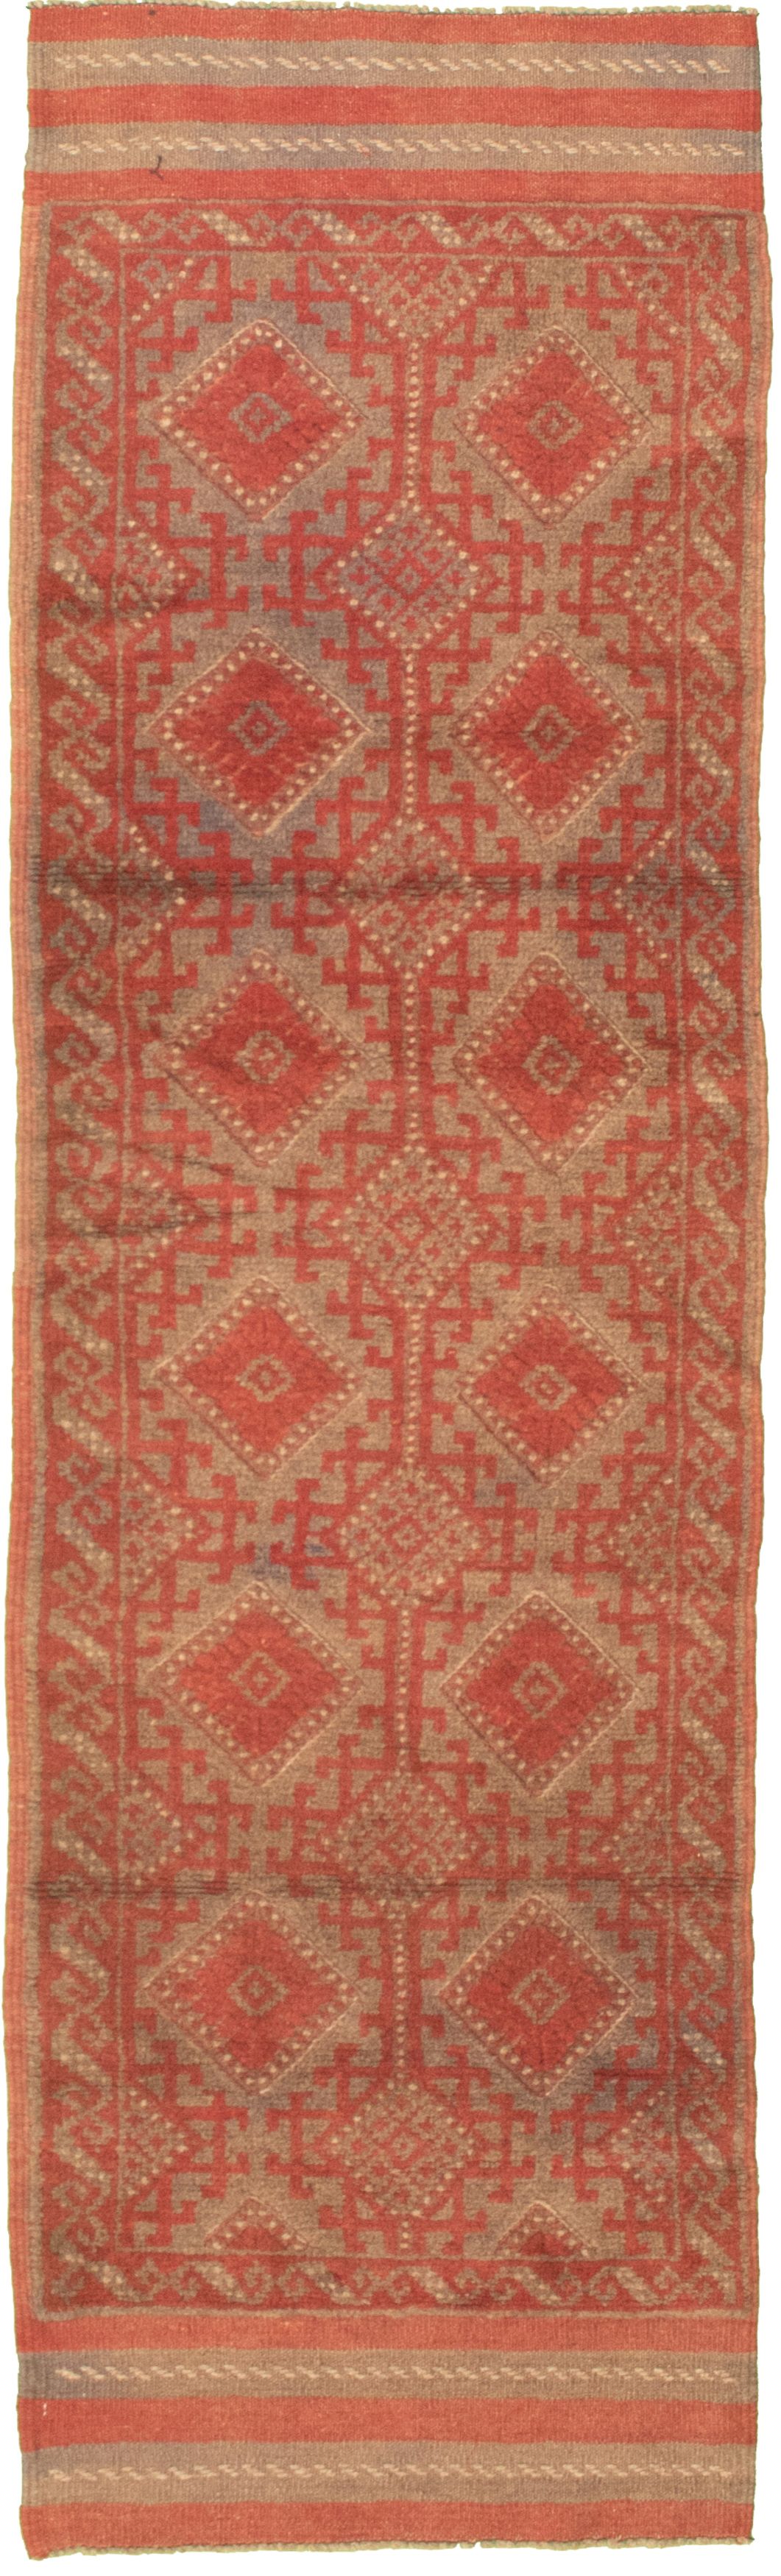 Hand-knotted Tajik Caucasian Khaki Wool Rug 2'0" x 9'4" Size: 2'0" x 9'4"  